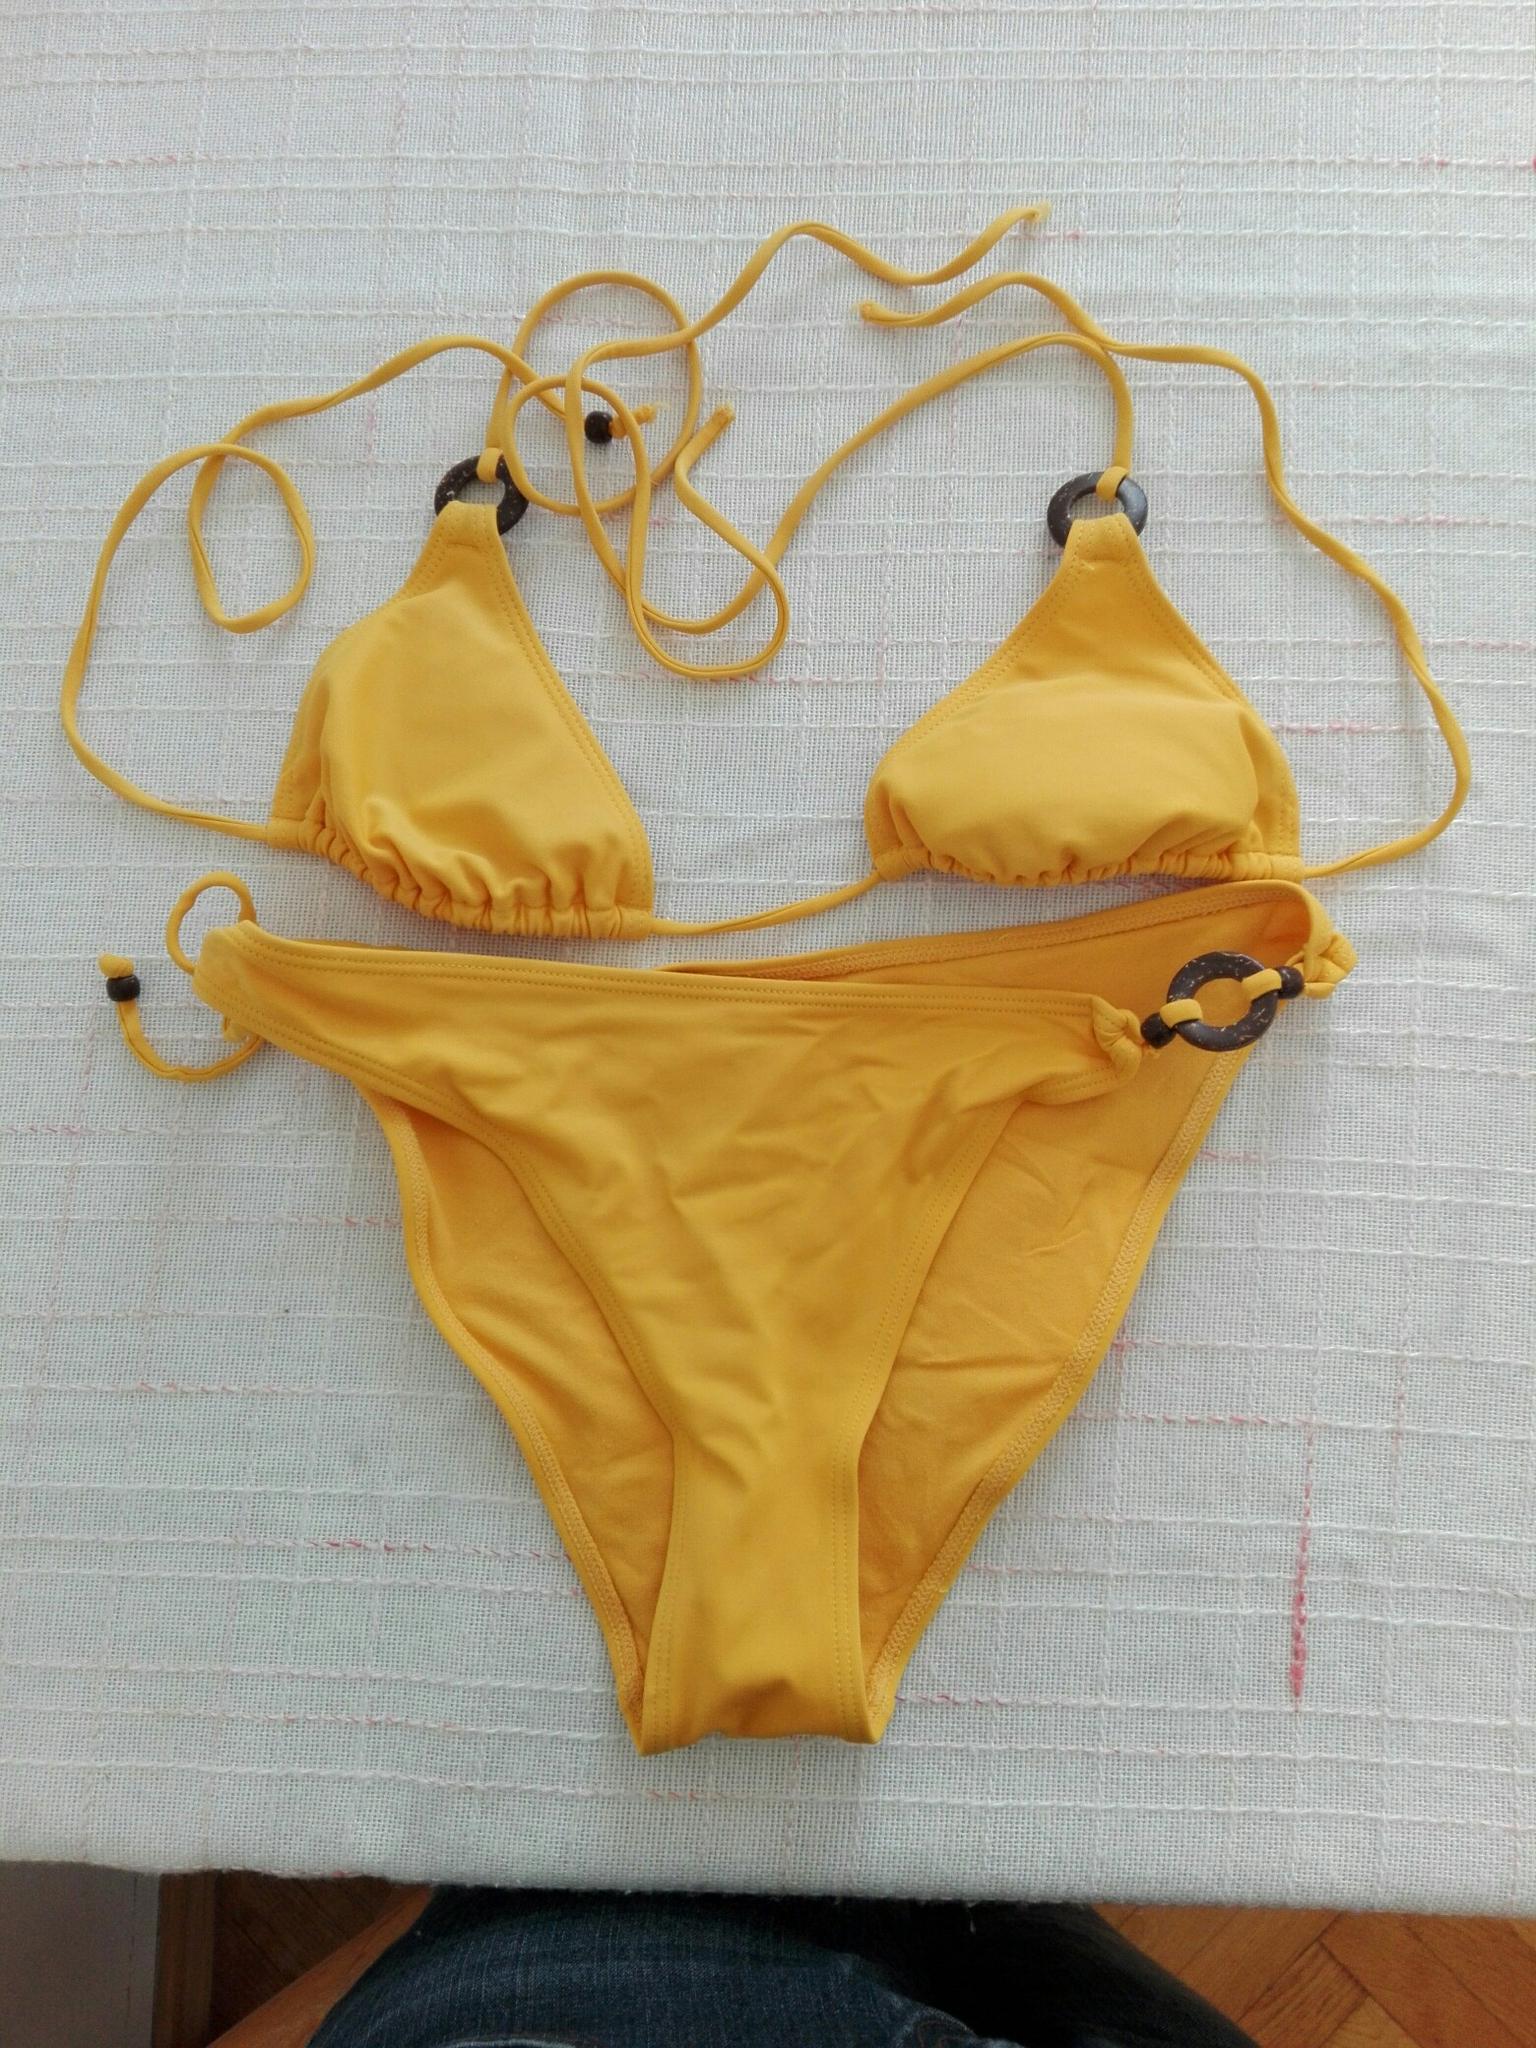 Gelber Bikini In 40 Linz For 3 00 For Sale Shpock